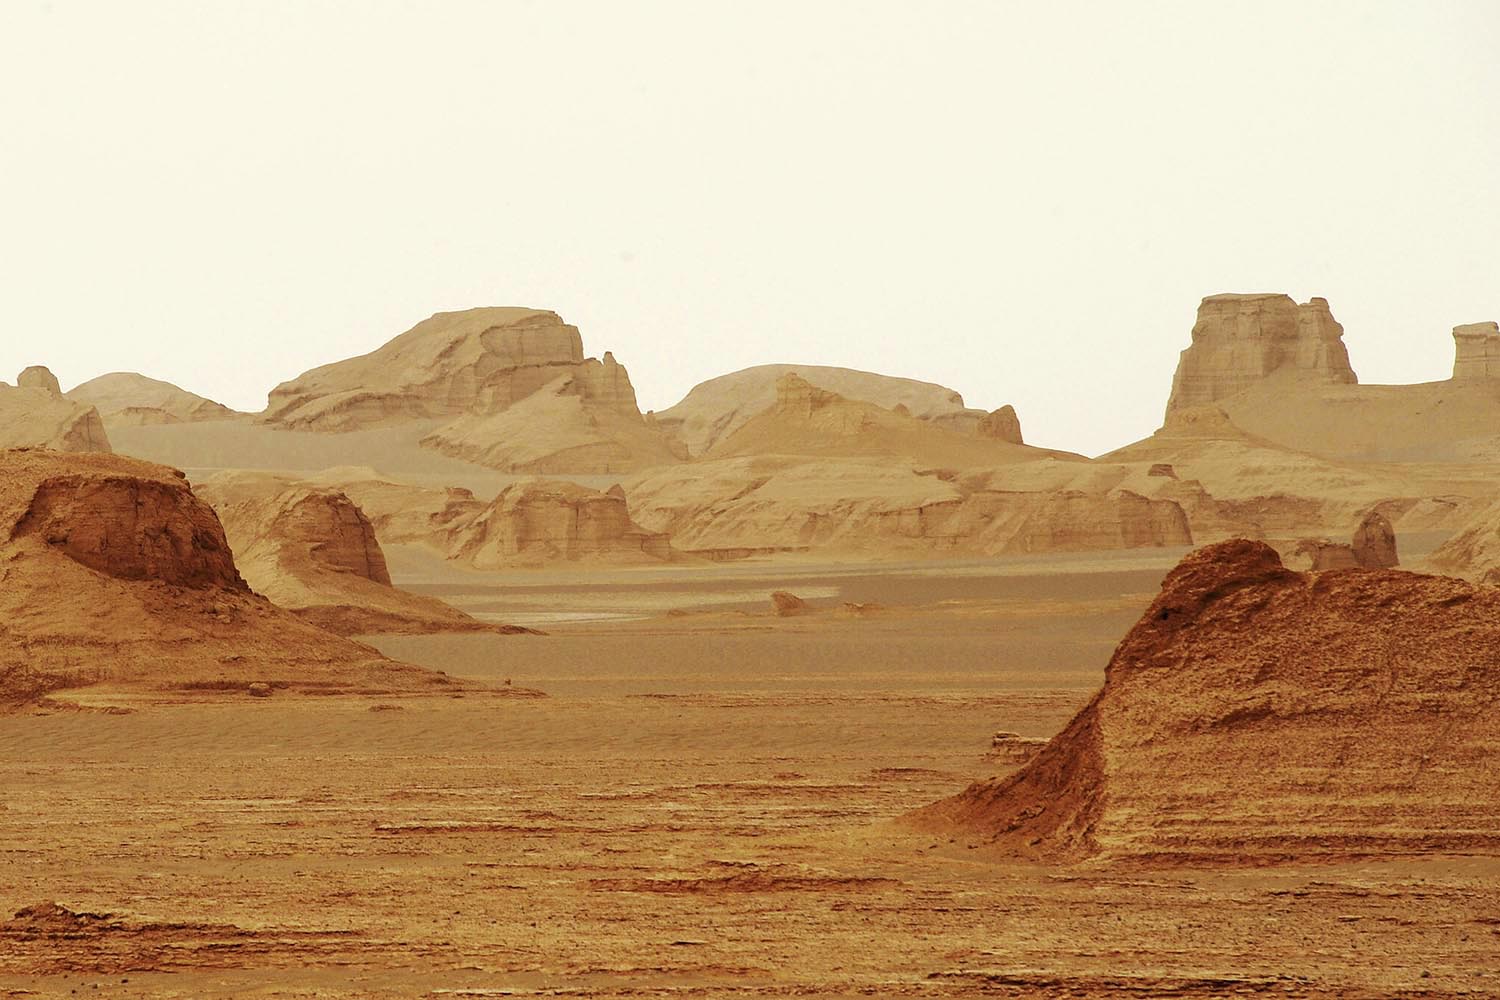 Especial Lugares muy calientes. El desierto de Kavir es uno de los lugares más secos del mundo